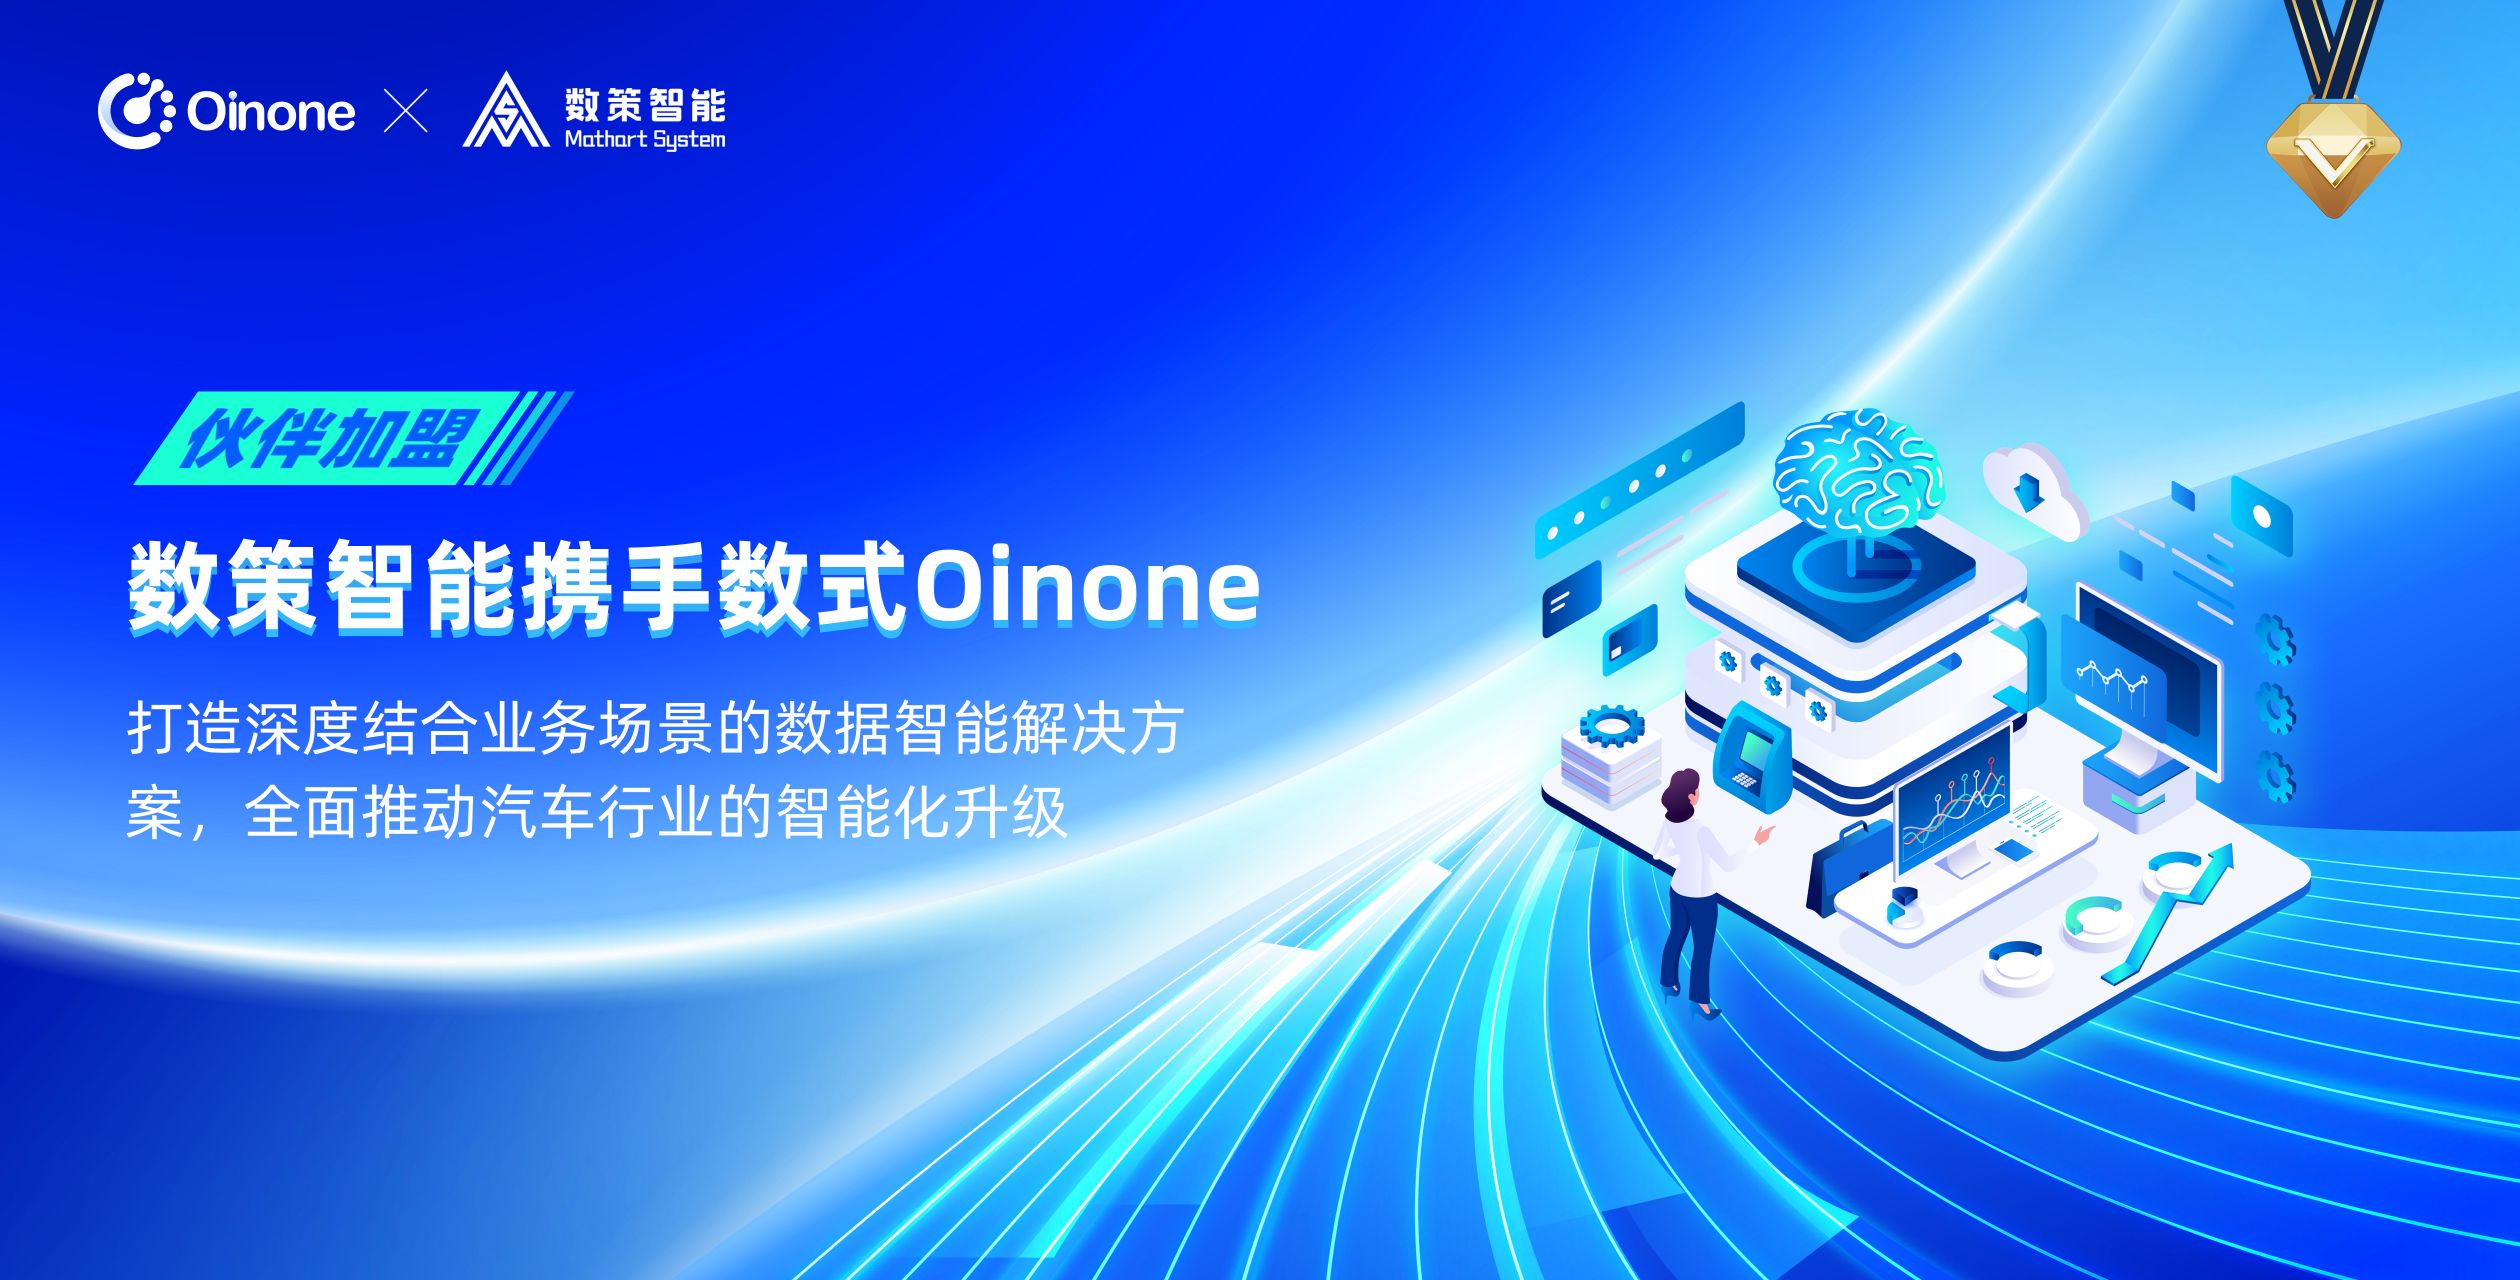 上海数策携手Oinone，全面推动汽车行业的智能化升级 - 数式Oinone社区,专注复杂场景的低代码社区平台